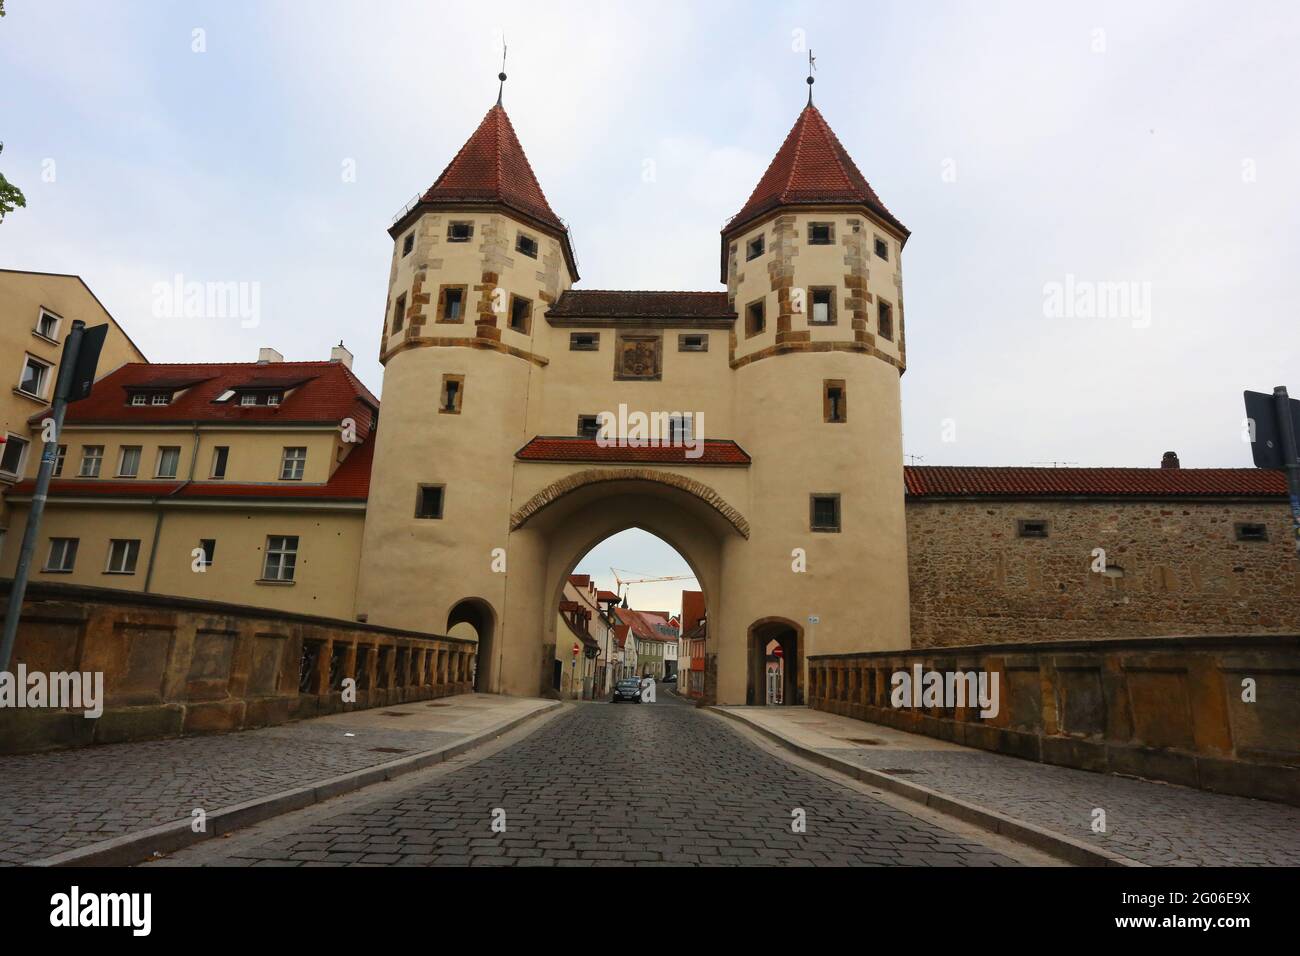 Amberg, Oberpfalz, Bayern Ein Spaziergang durch das mittelalterliche Zentrum Ambergs und das Nabburger Tor verzaubert sowohl Kulturliebhaber Foto de stock